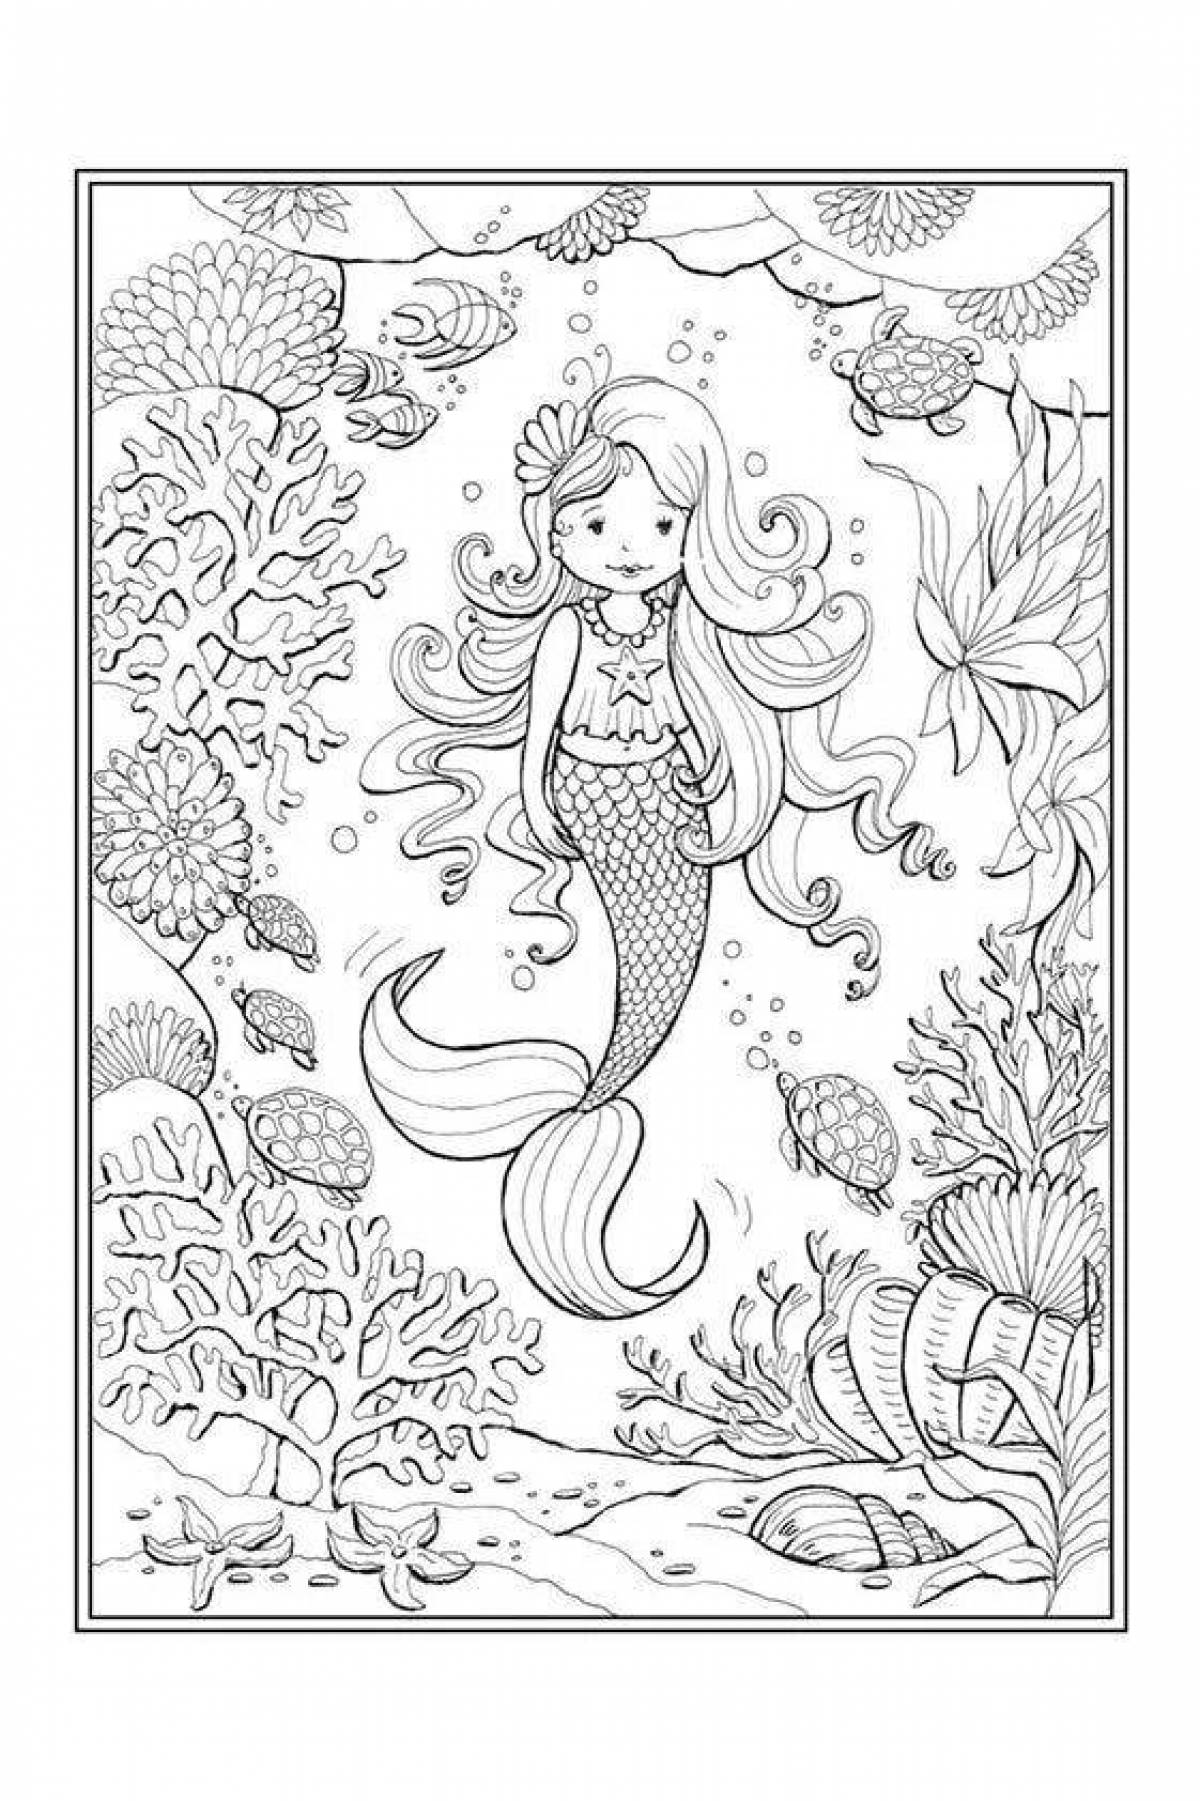 Peace coloring antistress mermaid